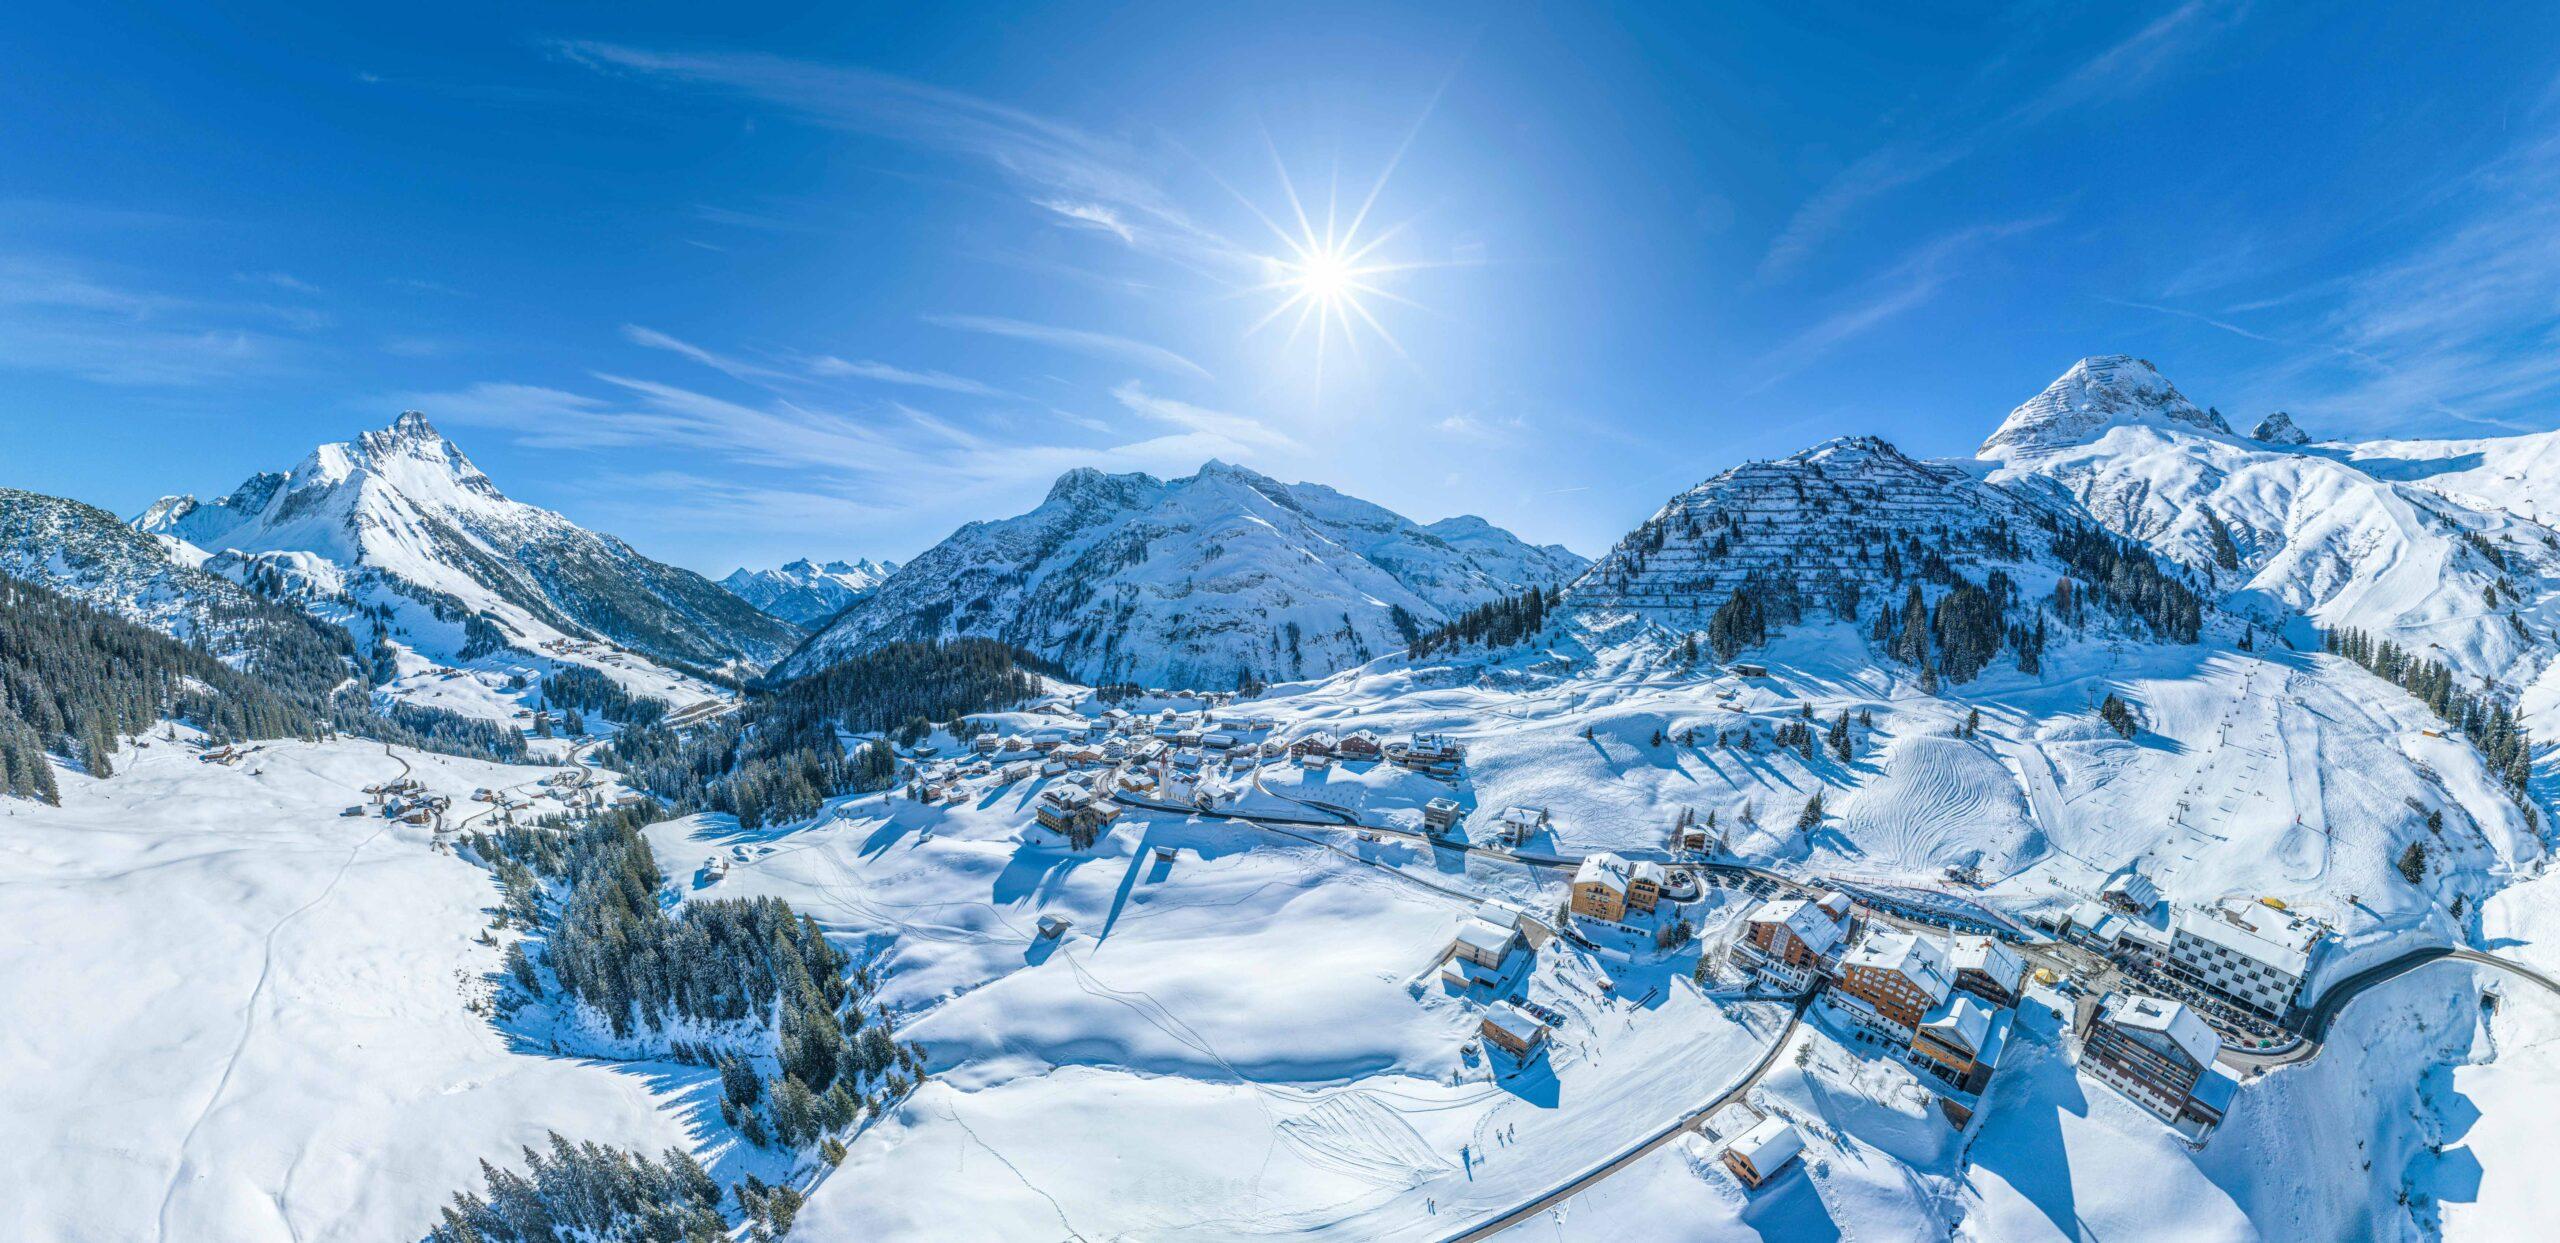 Winterlicher Ausblick auf das Winterportgebiet Warth-Schröcken bei Warth am Arlberg